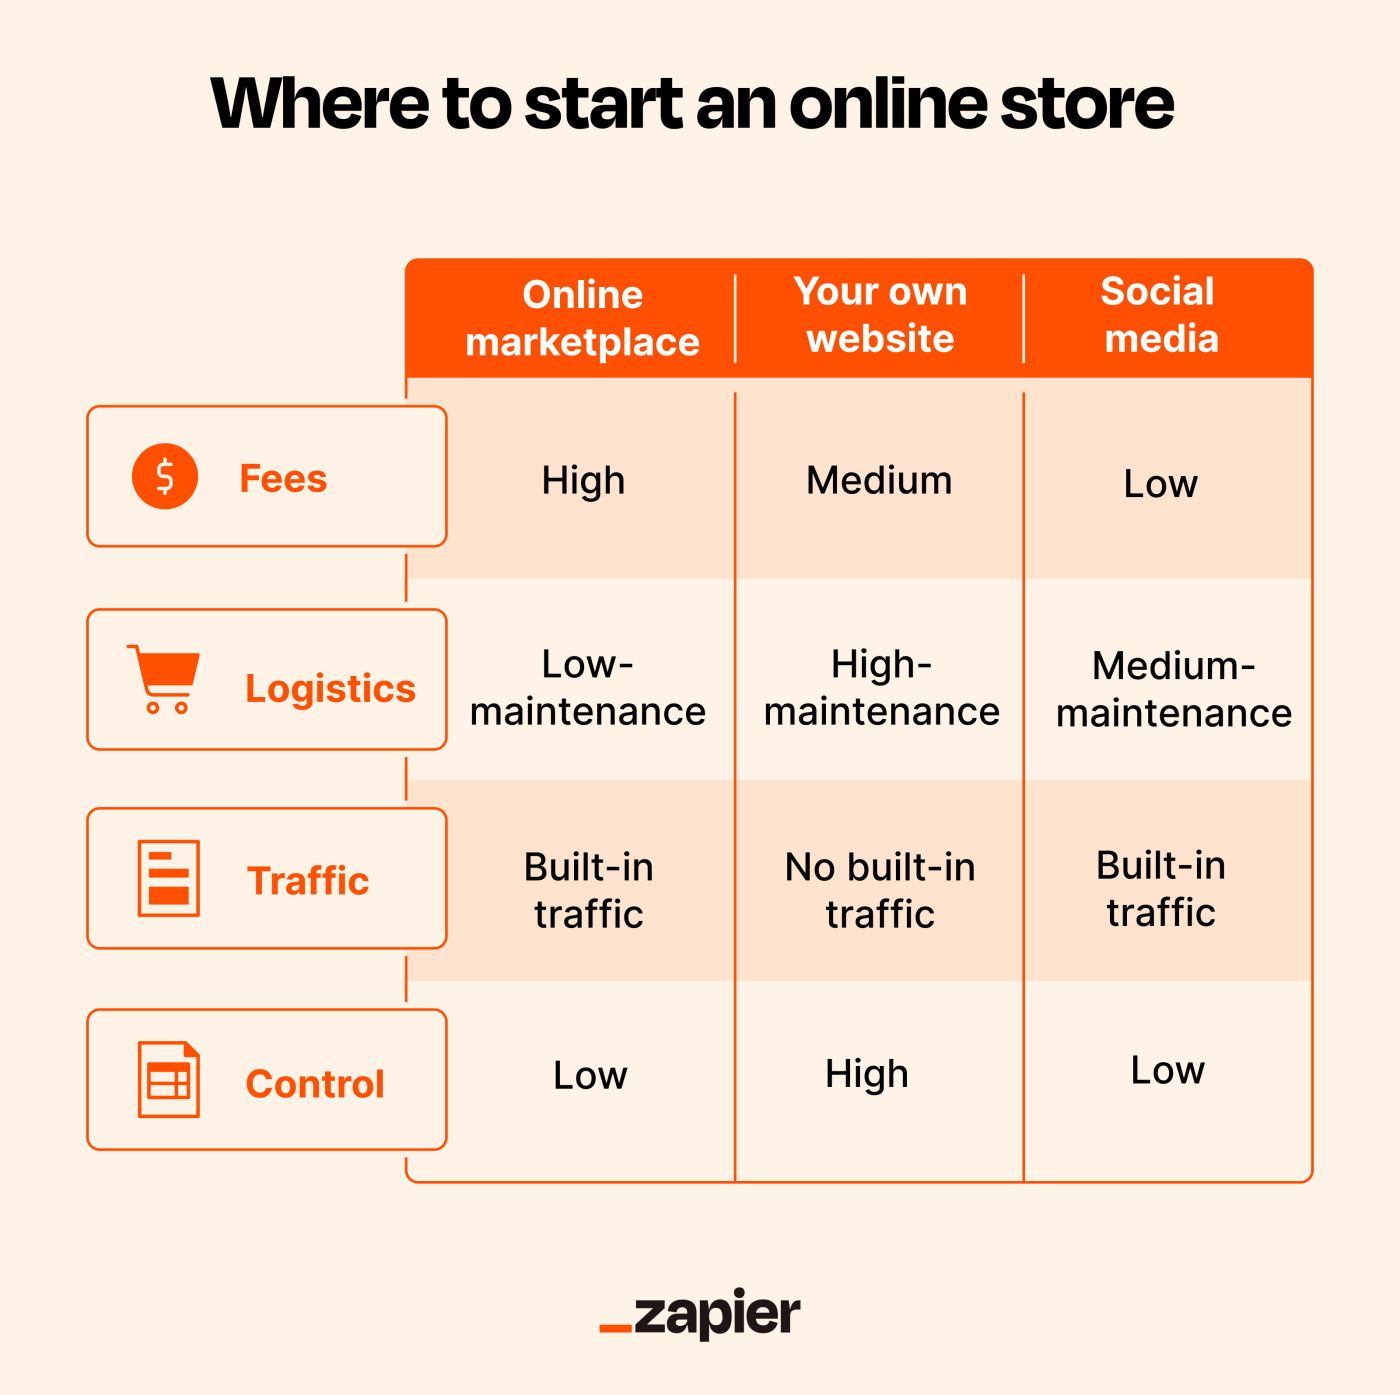 Raad eens Gespecificeerd Garderobe Where to start an online store: The best places for eCommerce | Zapier